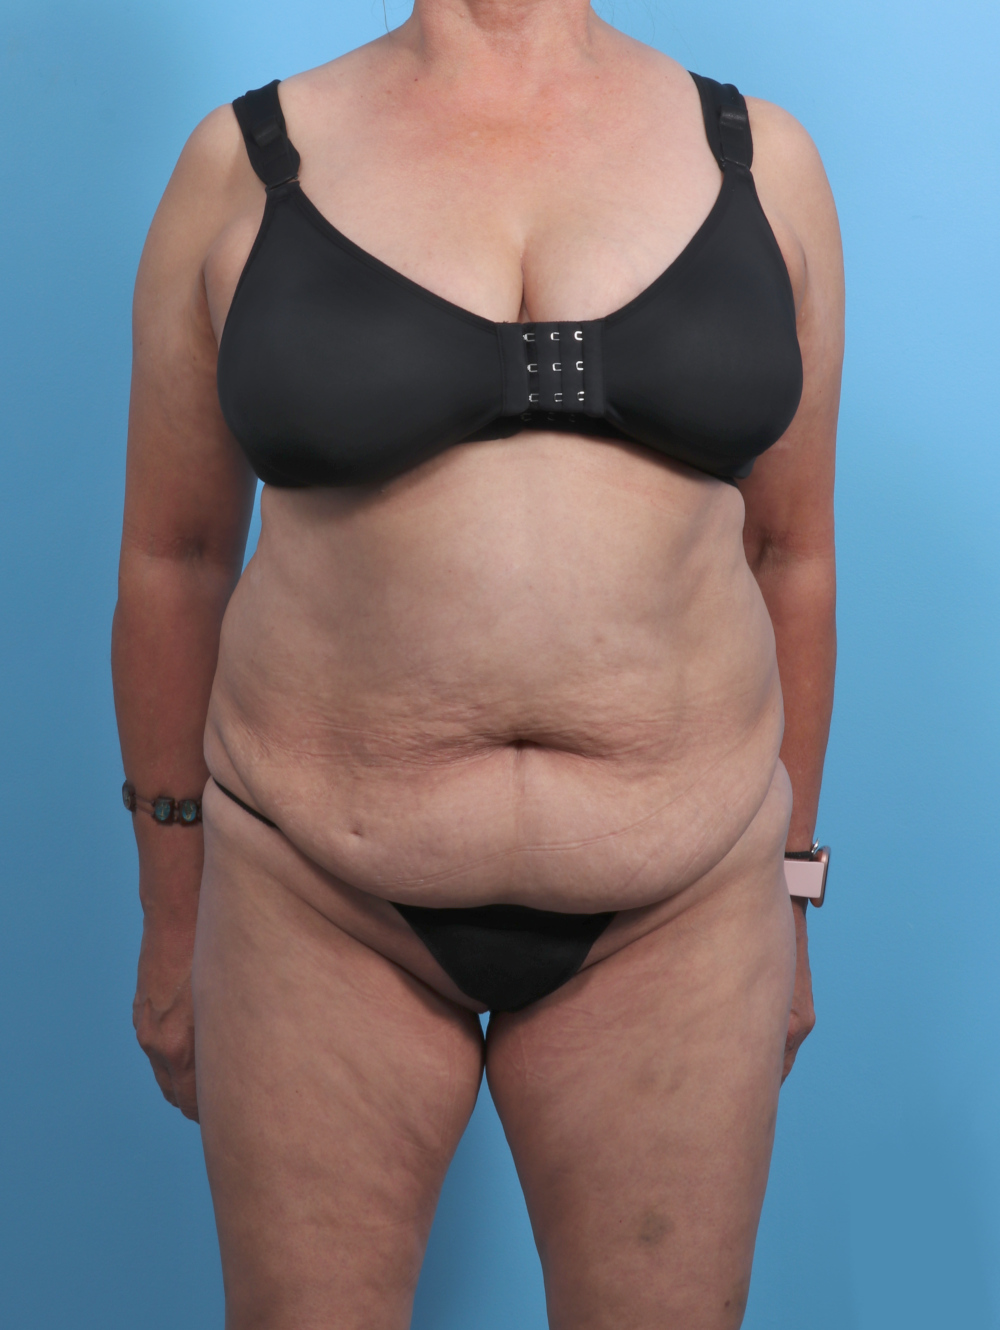 Liposuction Patient Photo - Case 4489 - before view-0